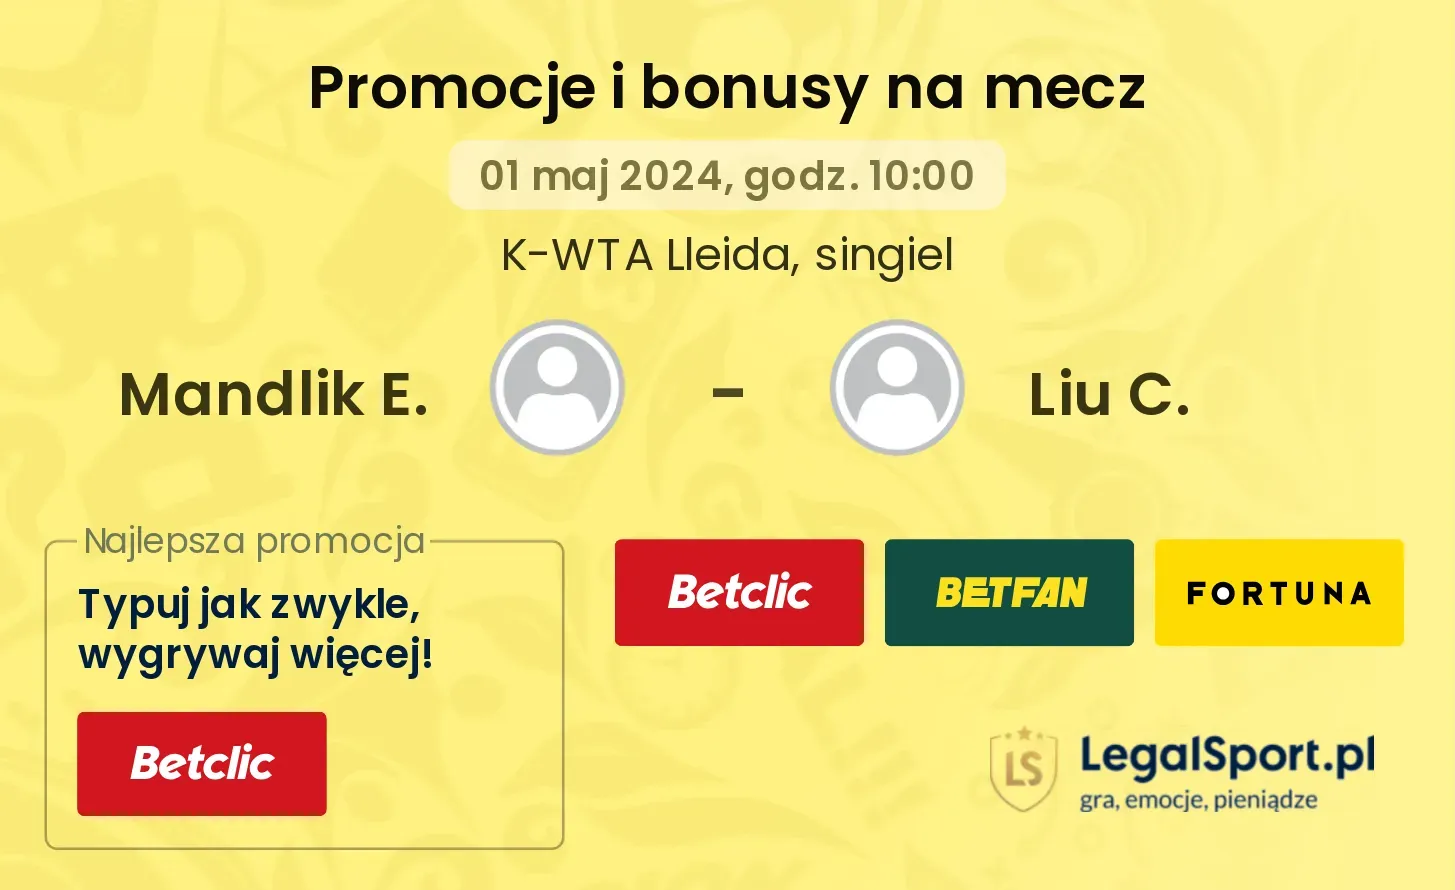 Mandlik E. - Liu C. promocje bonusy na mecz